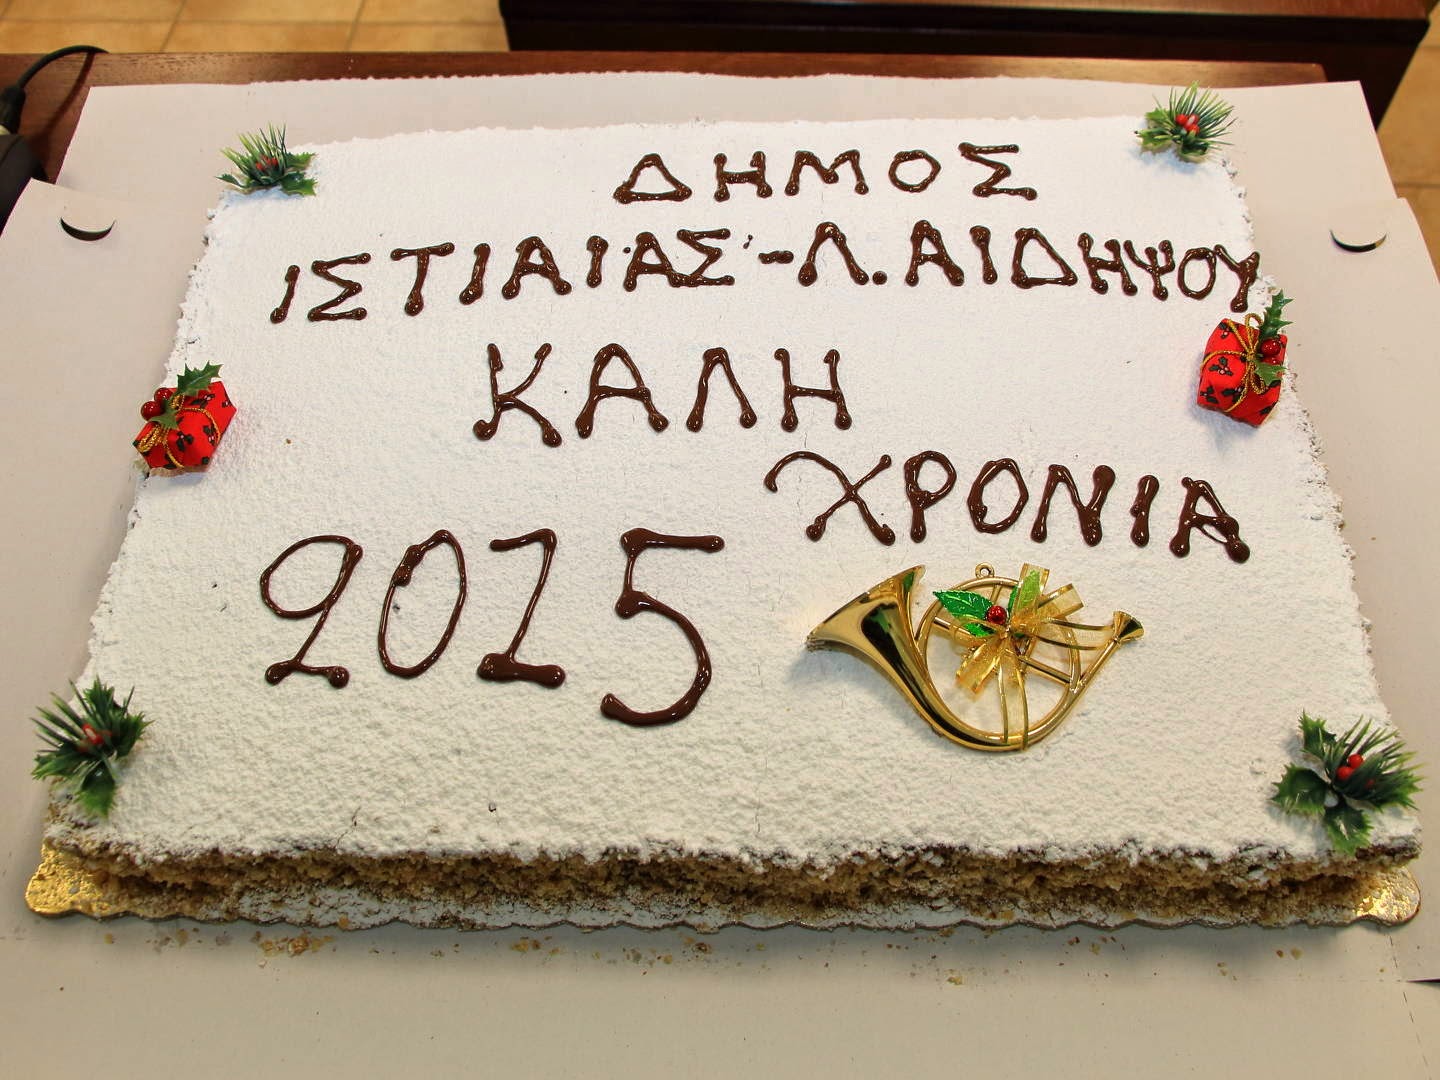 Ο Δήμος Ιστιαίας - Αιδηψού έκοψε τη πίτα του (ΦΩΤΟ)